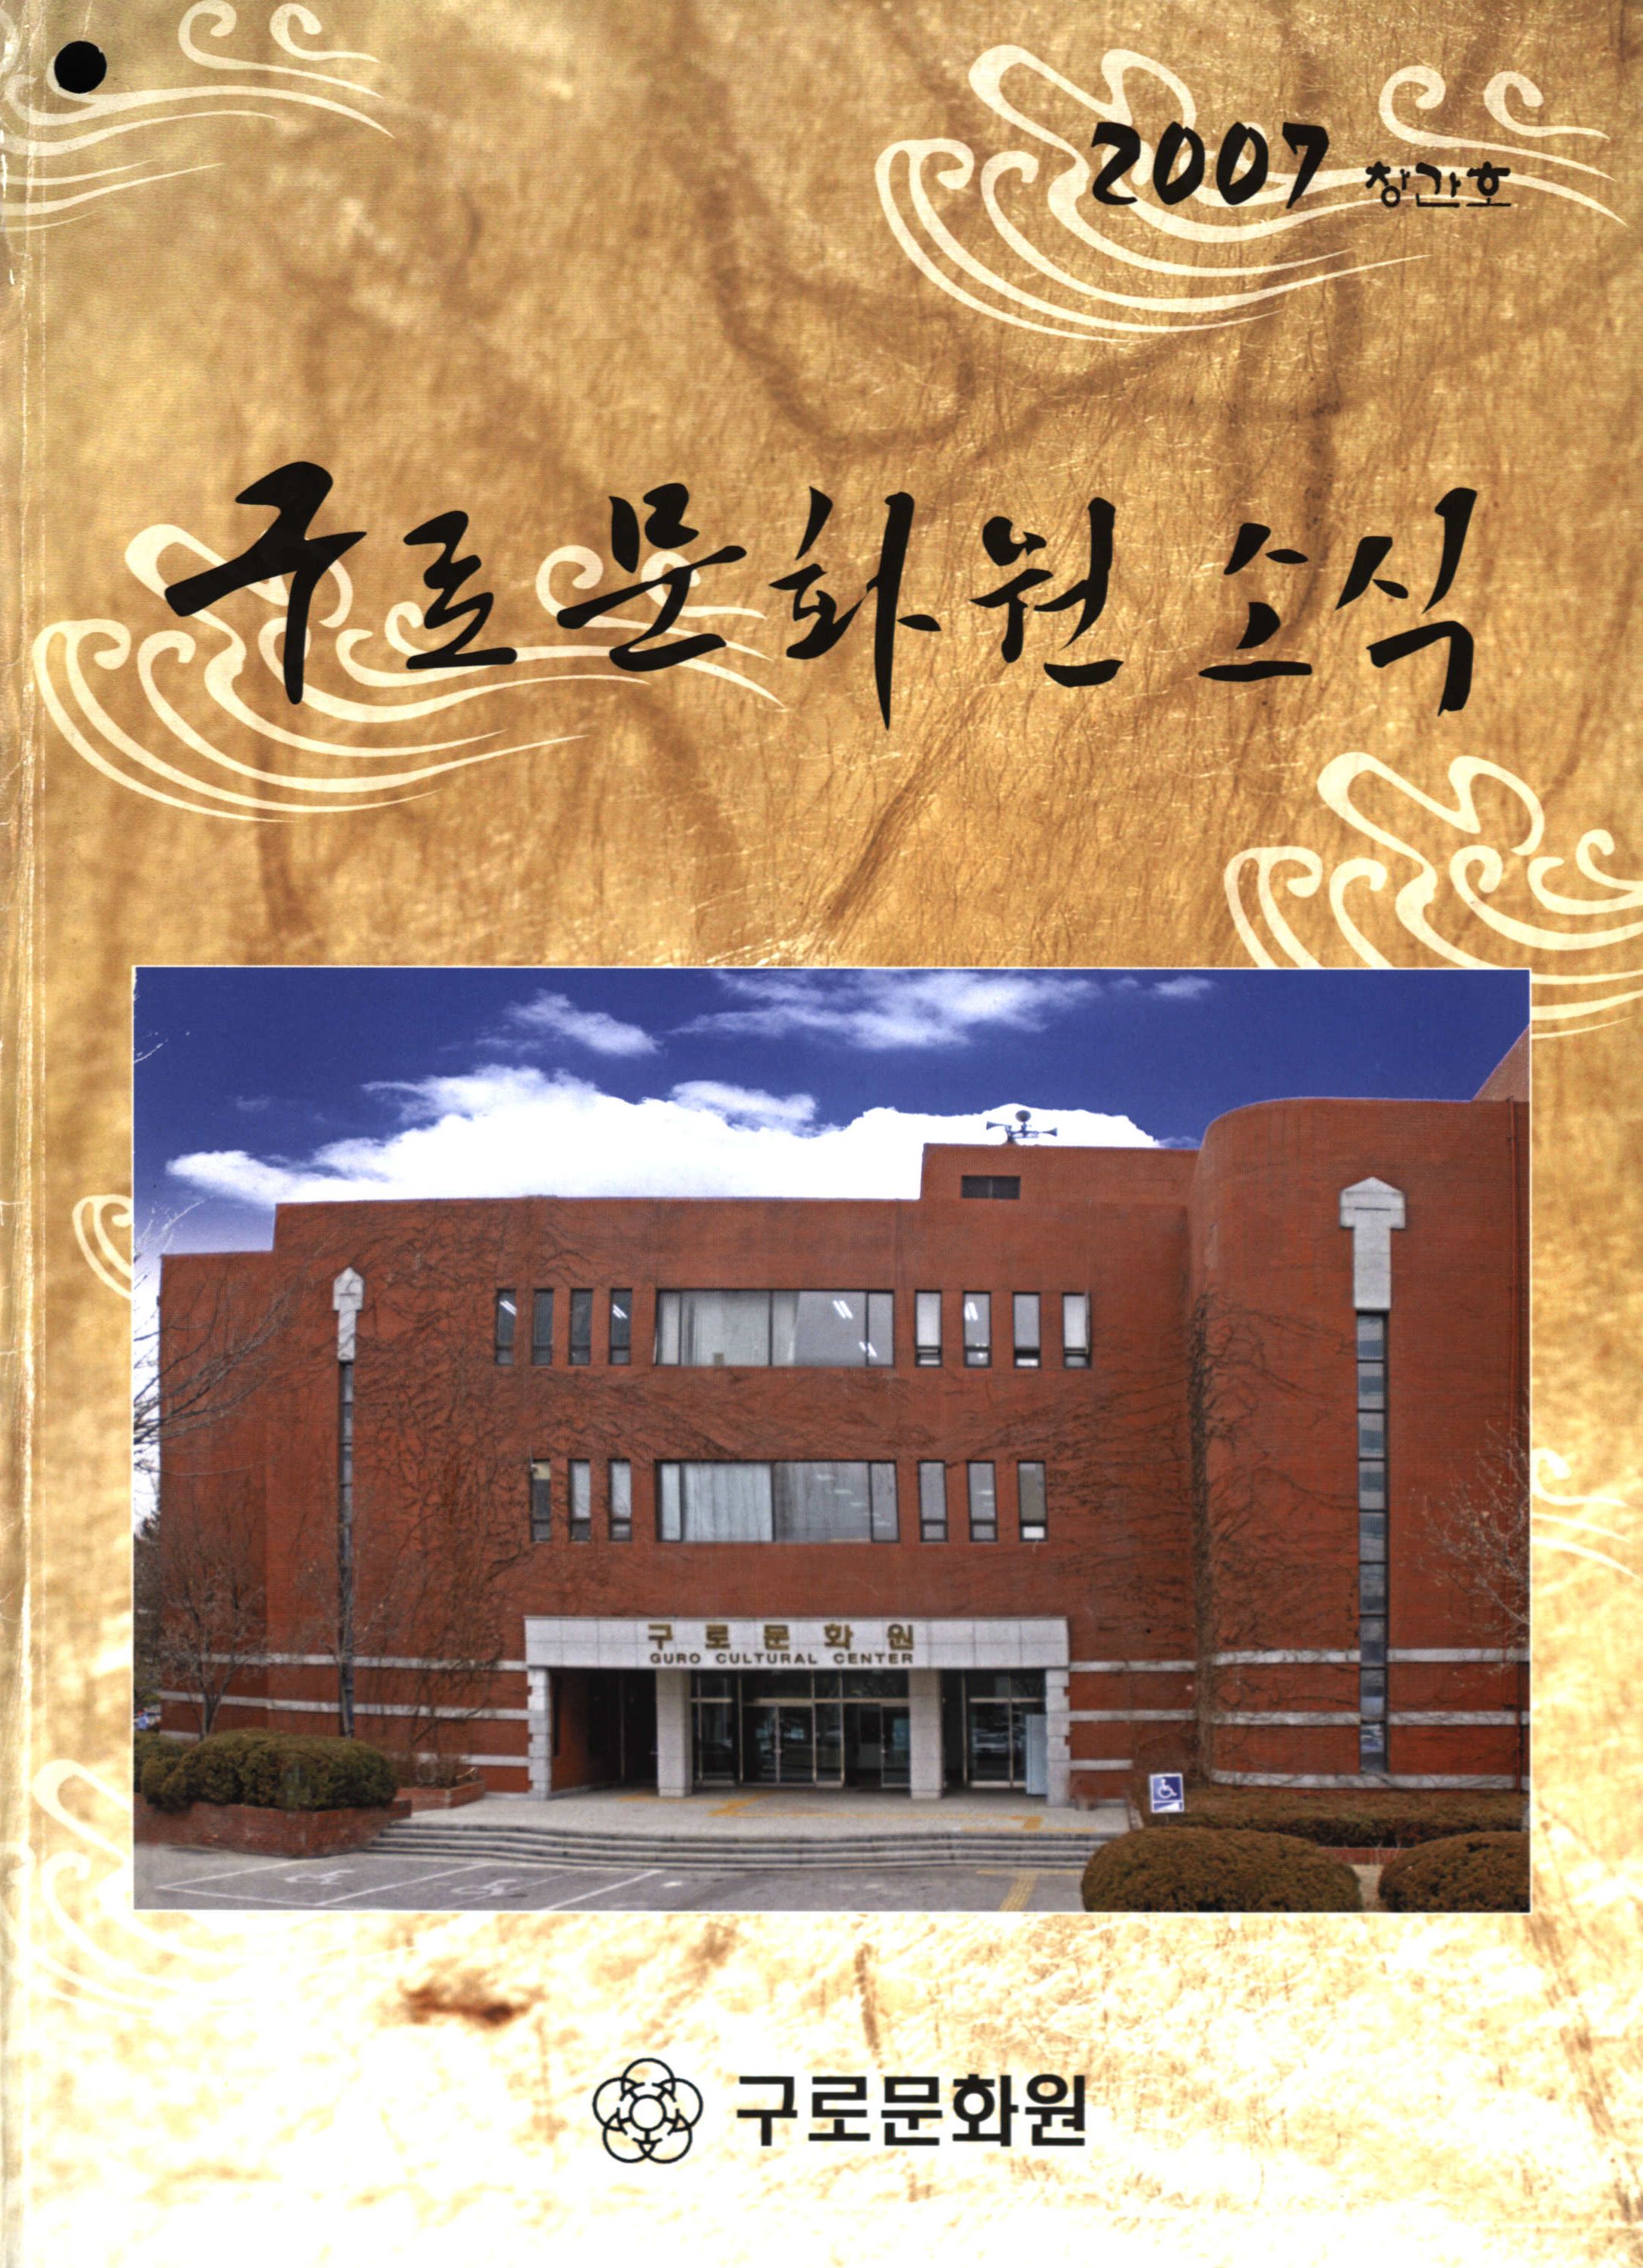 구로문화원 소식 (九老文化院消息) 2007년 창간호